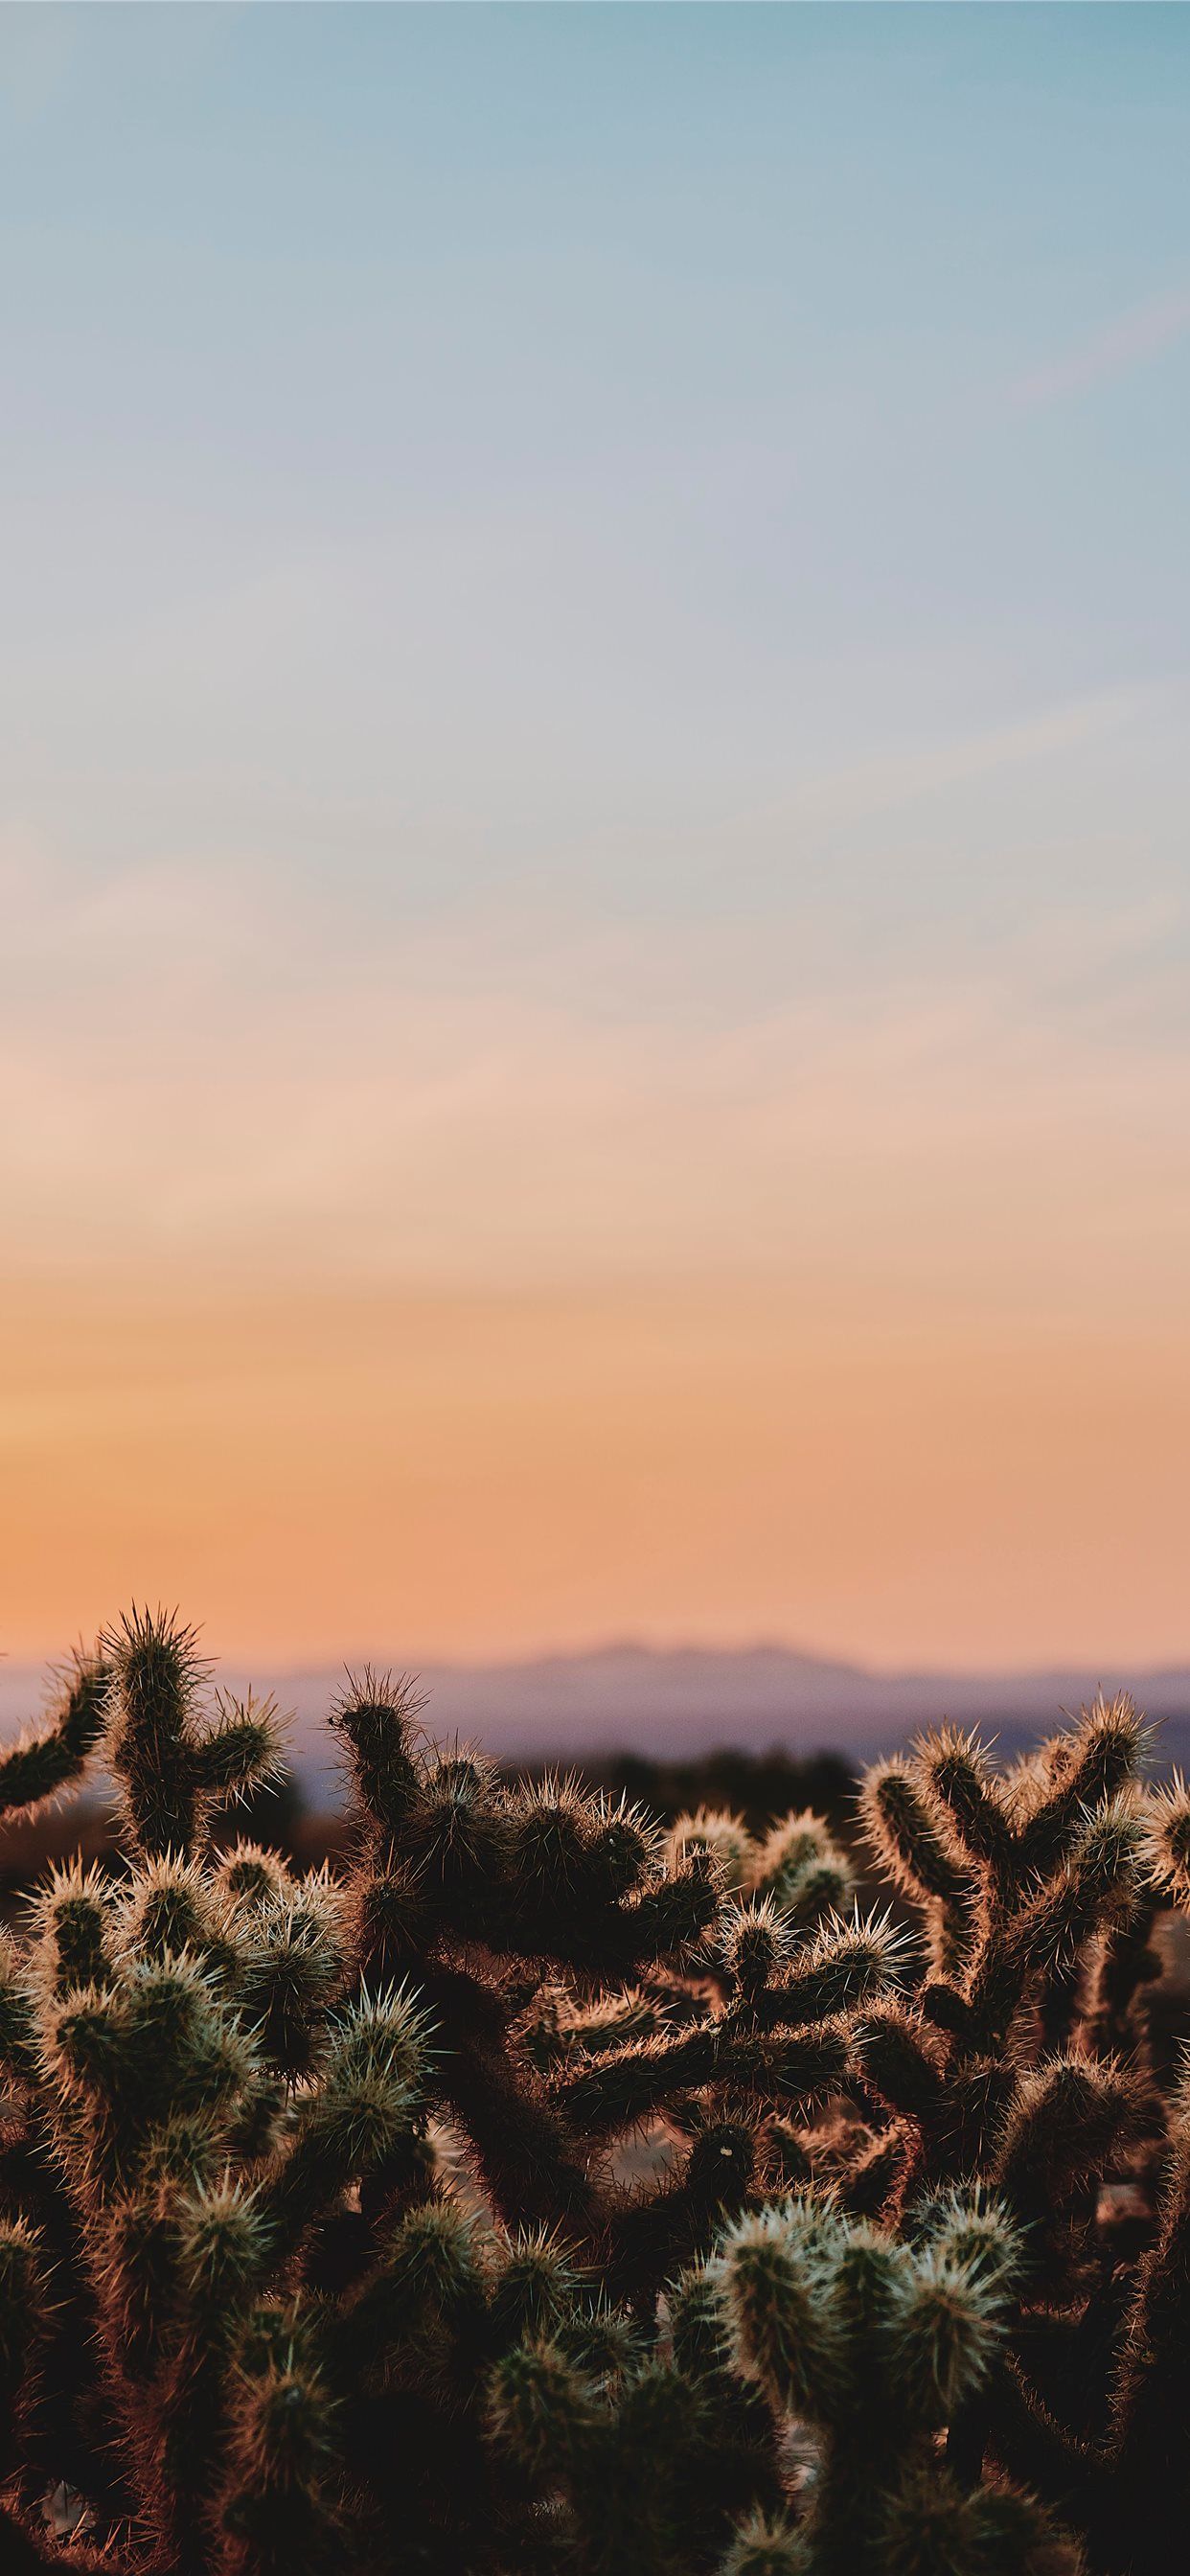 Cactus in the desert during sunset - Cactus